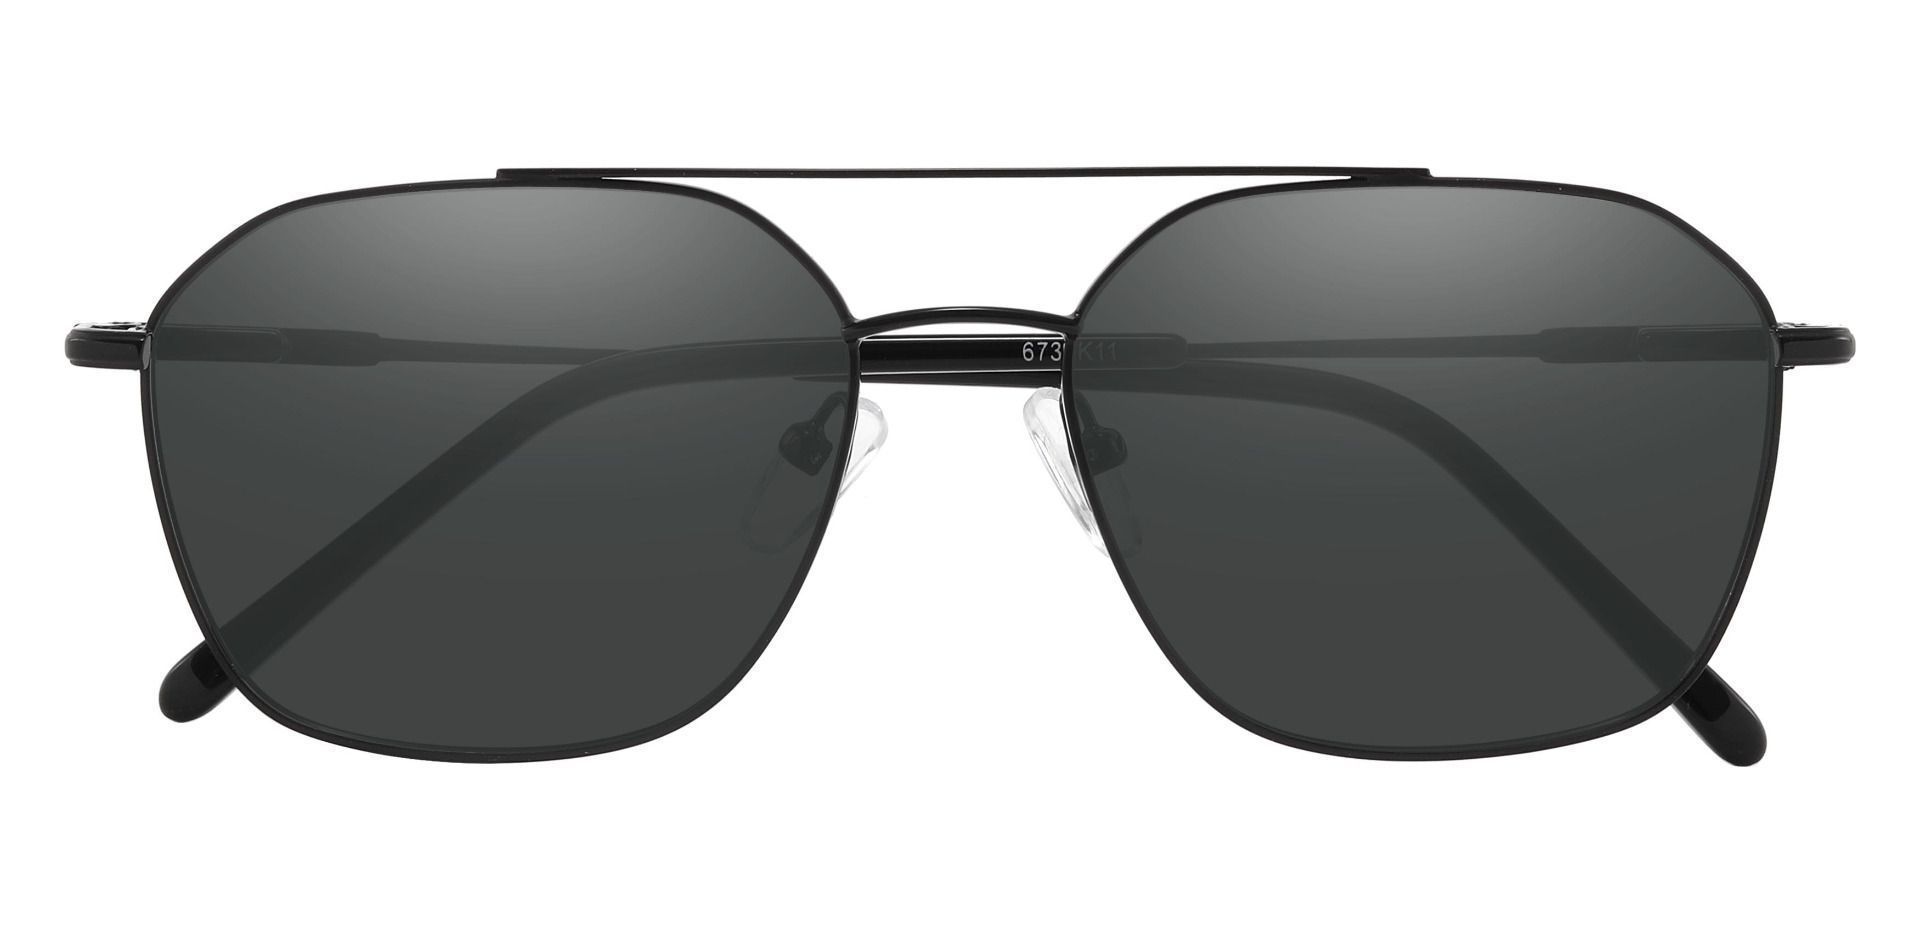 Harvey Aviator Reading Sunglasses - Black Frame With Gray Lenses